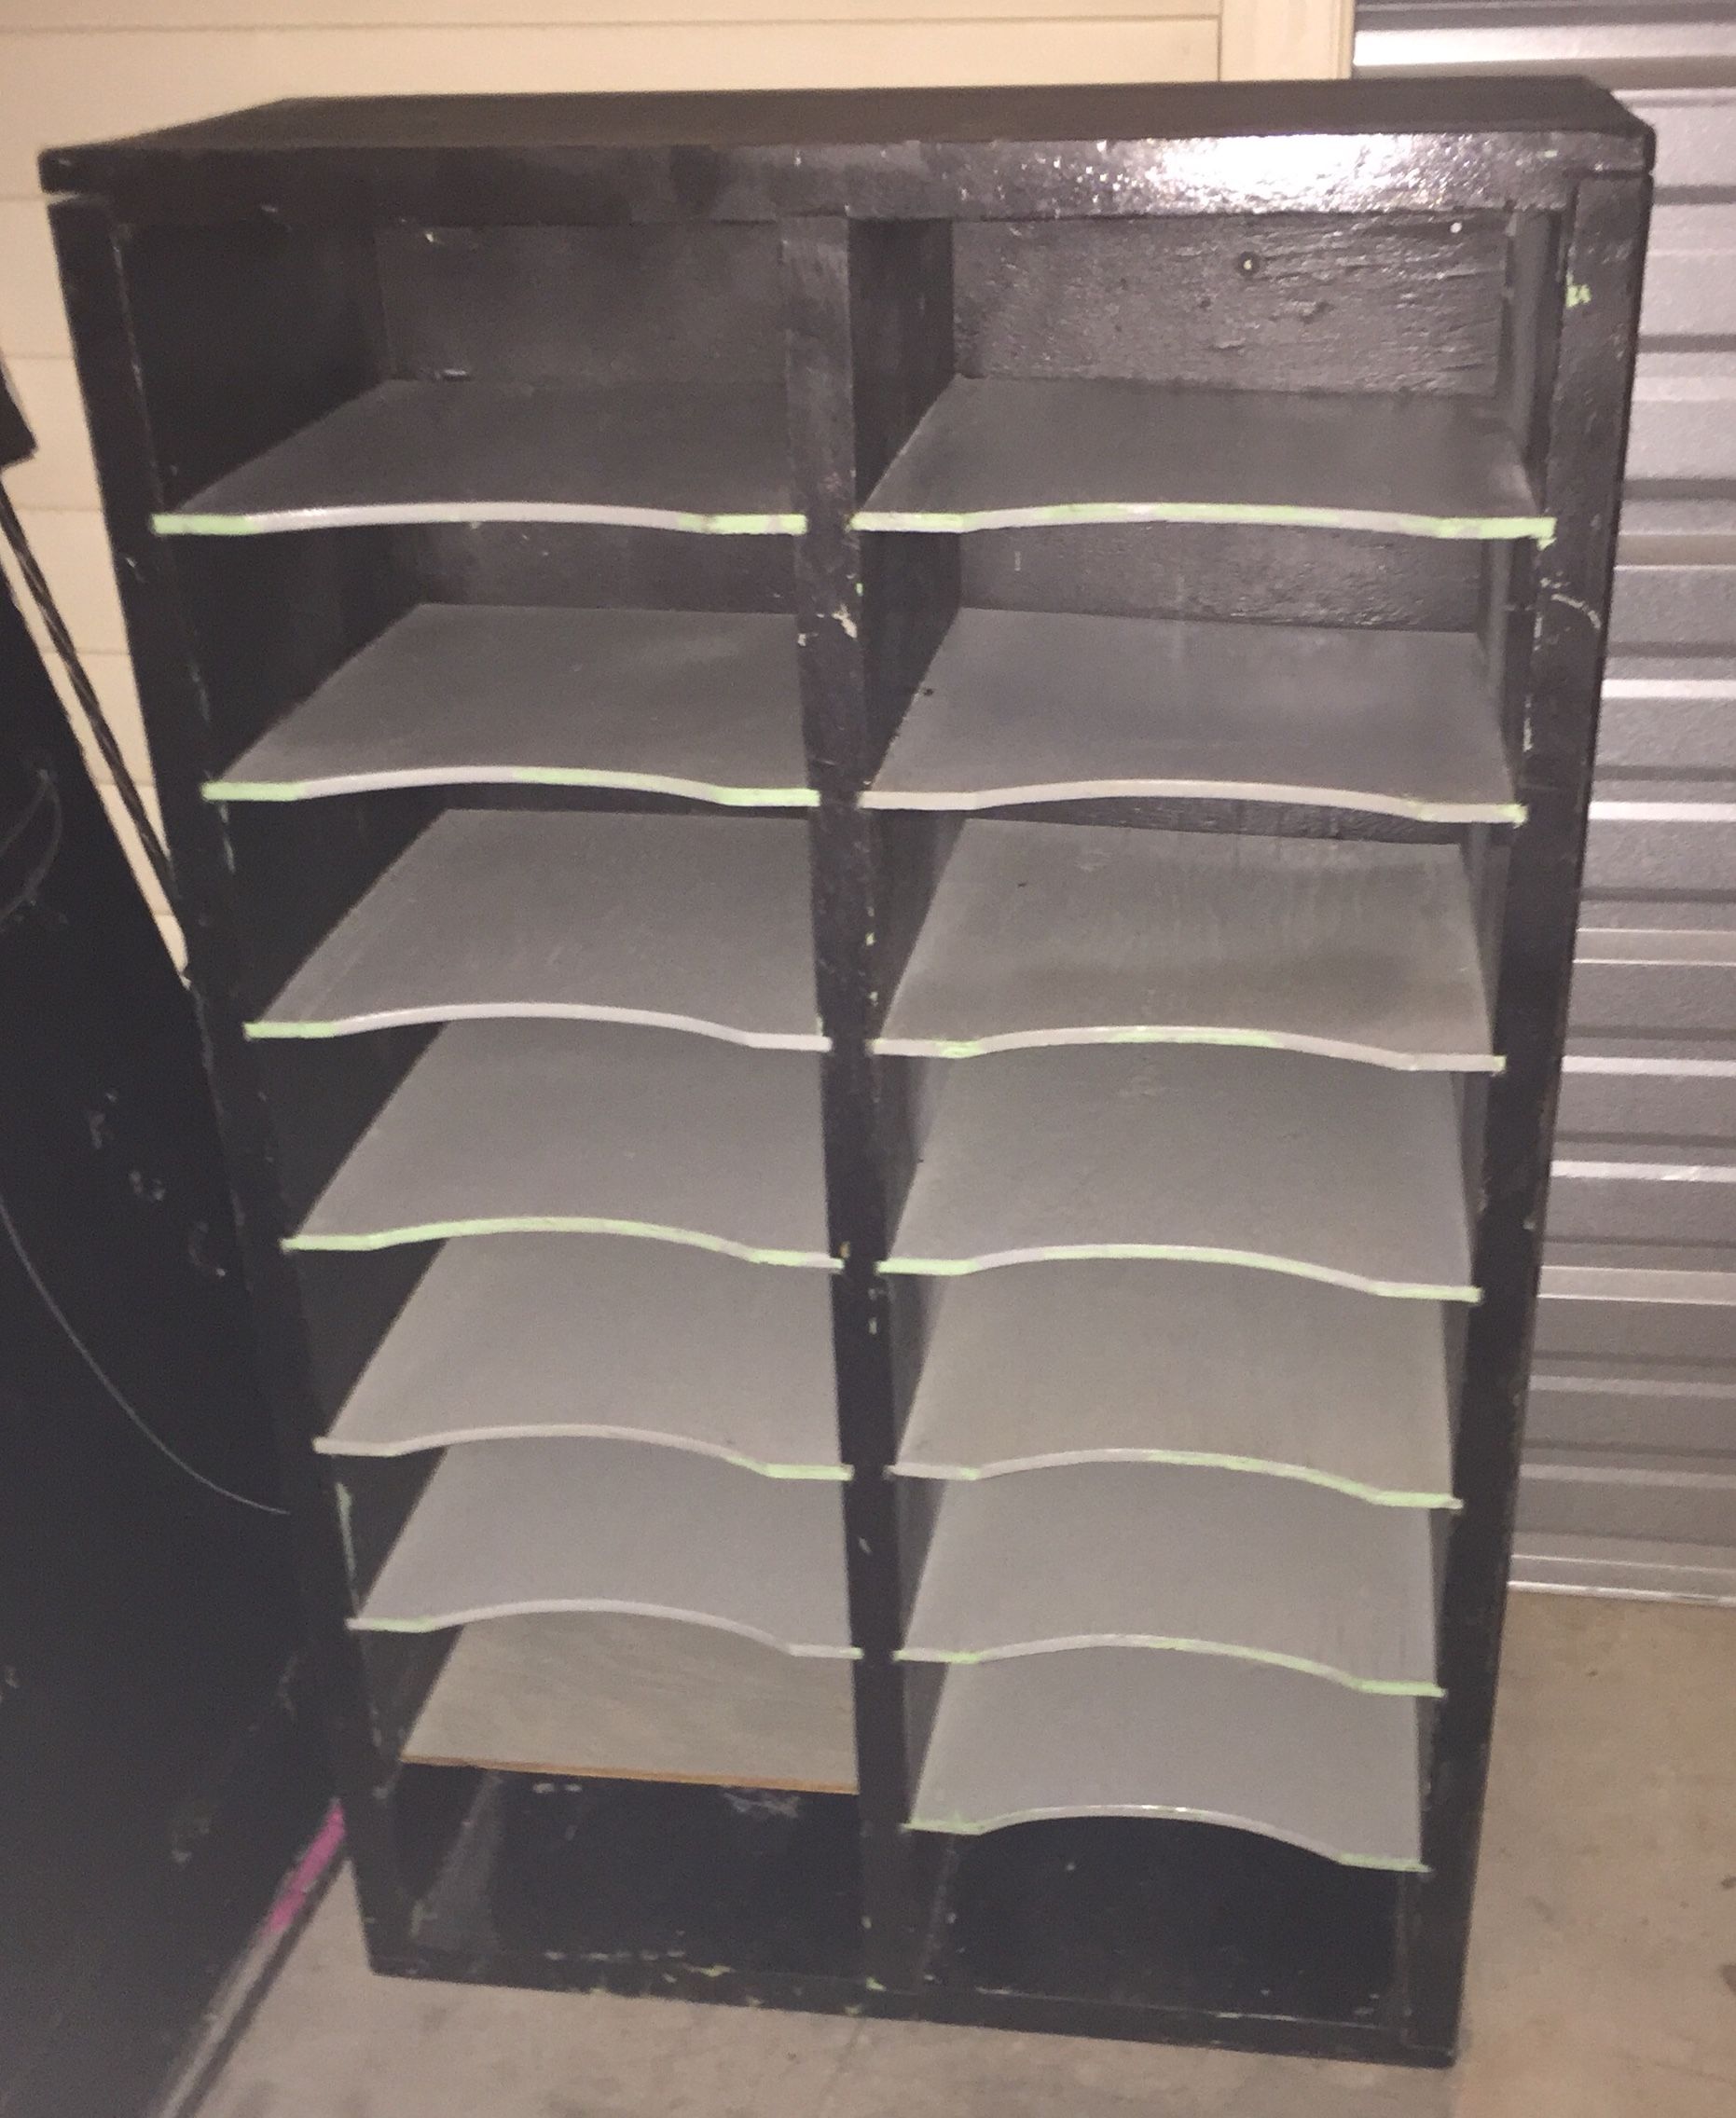 File Slot Cubbyhole Organizing Cabinet Shelves